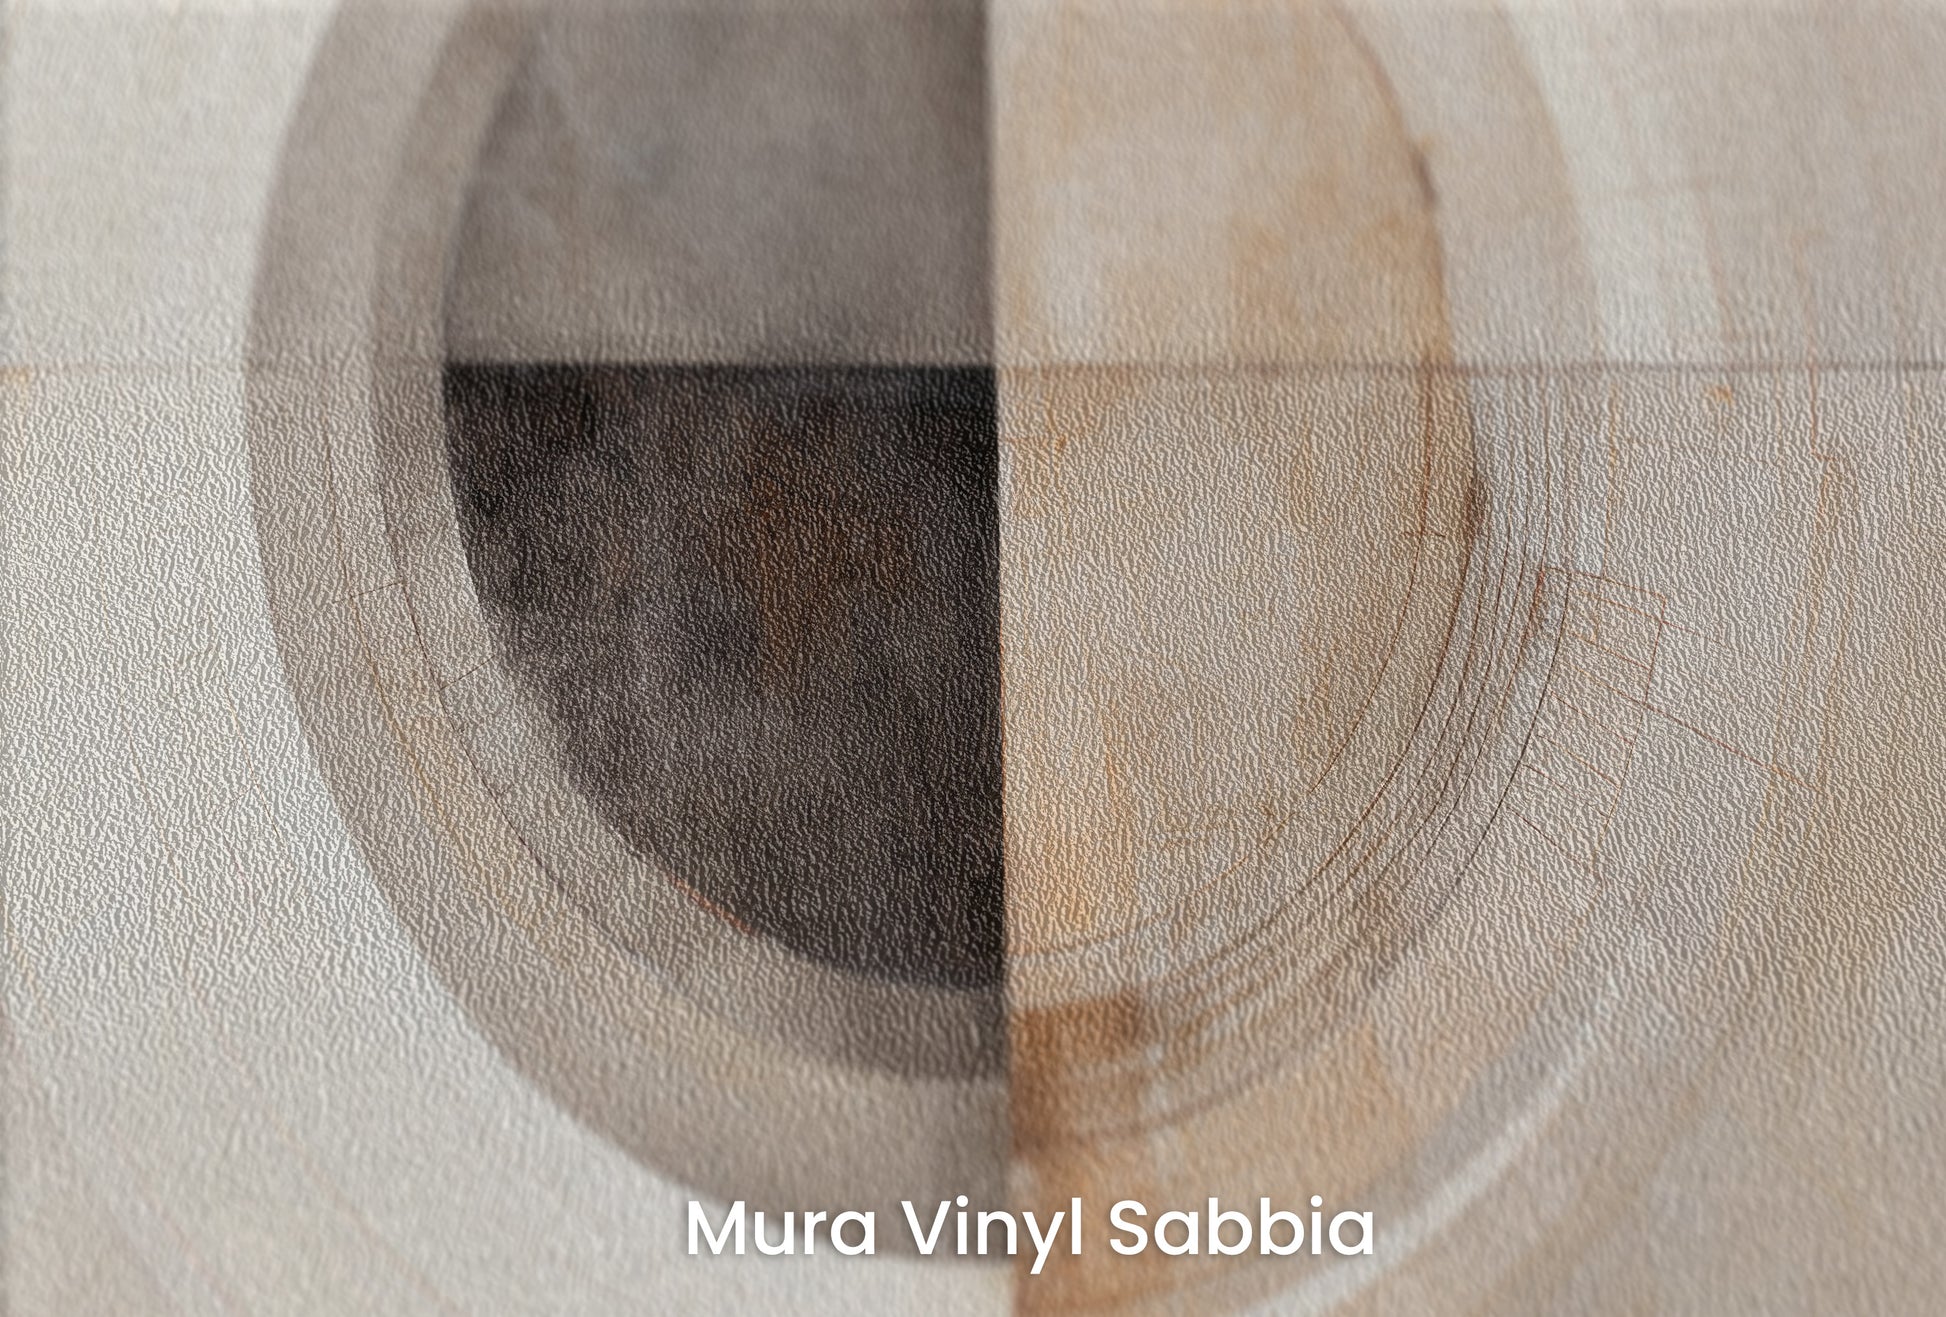 Zbliżenie na artystyczną fototapetę o nazwie MONOCHROME ECLIPSE ABSTRACTION #2 na podłożu Mura Vinyl Sabbia struktura grubego ziarna piasku.